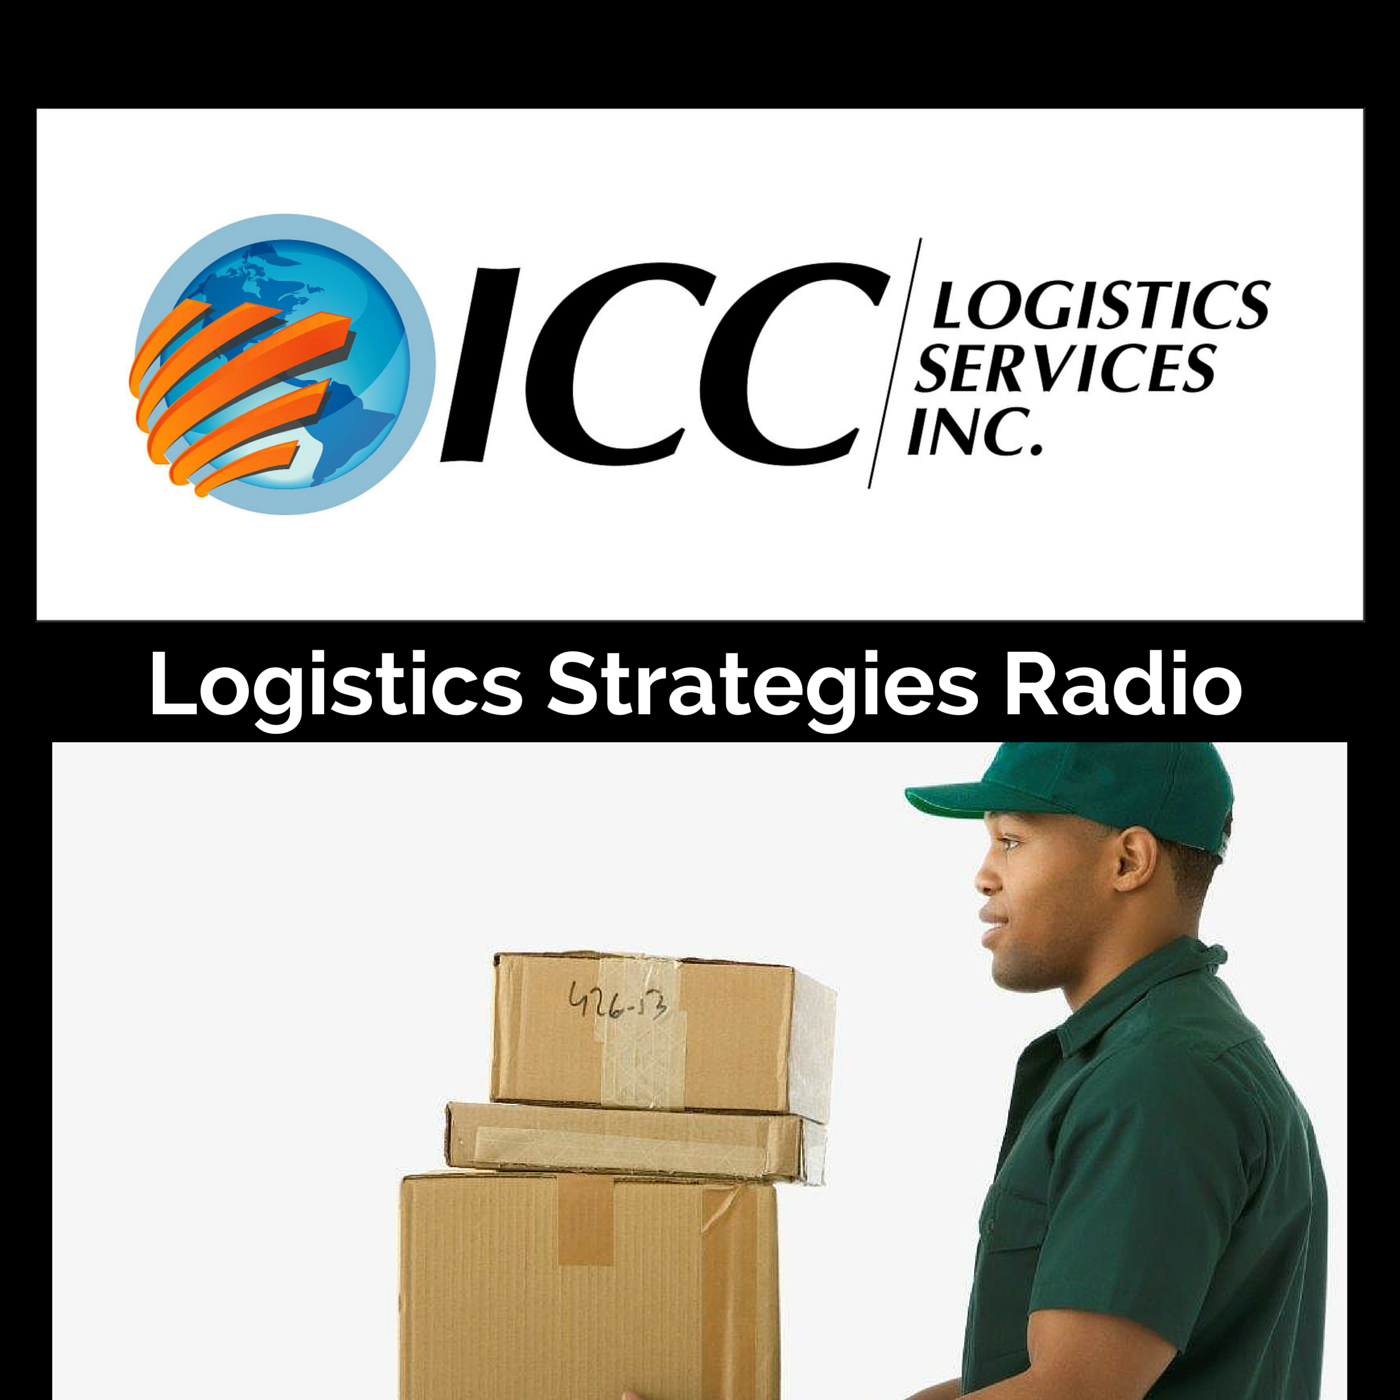 ICC Logistics